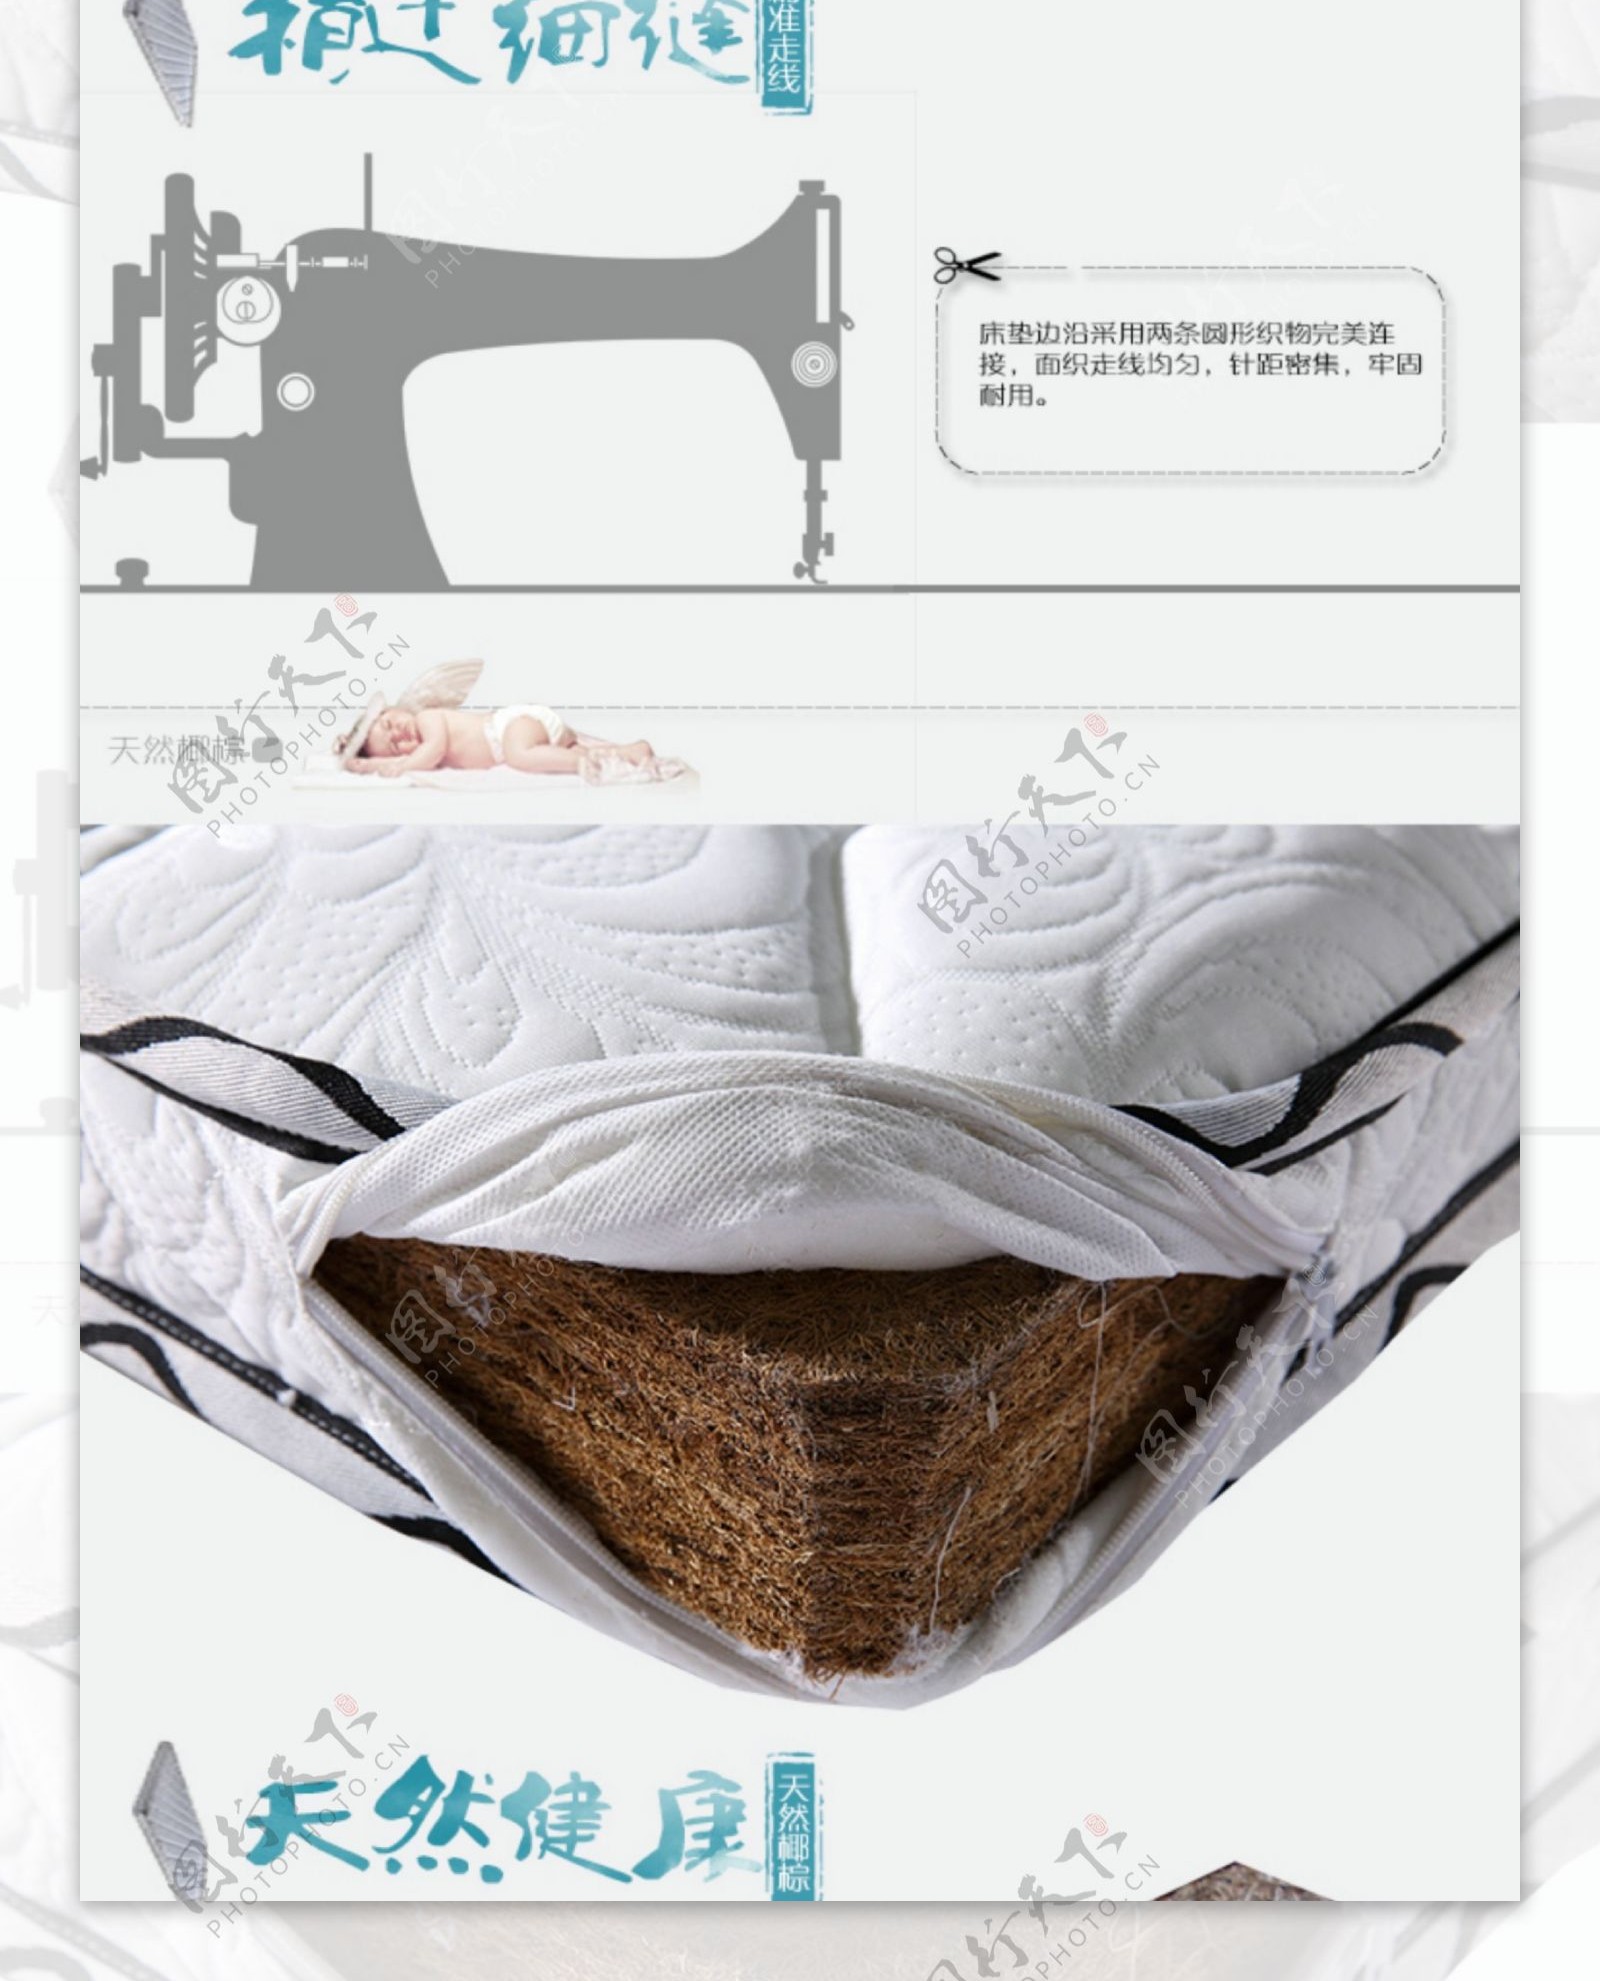 床垫详情页乳胶针织面料天猫淘宝通用